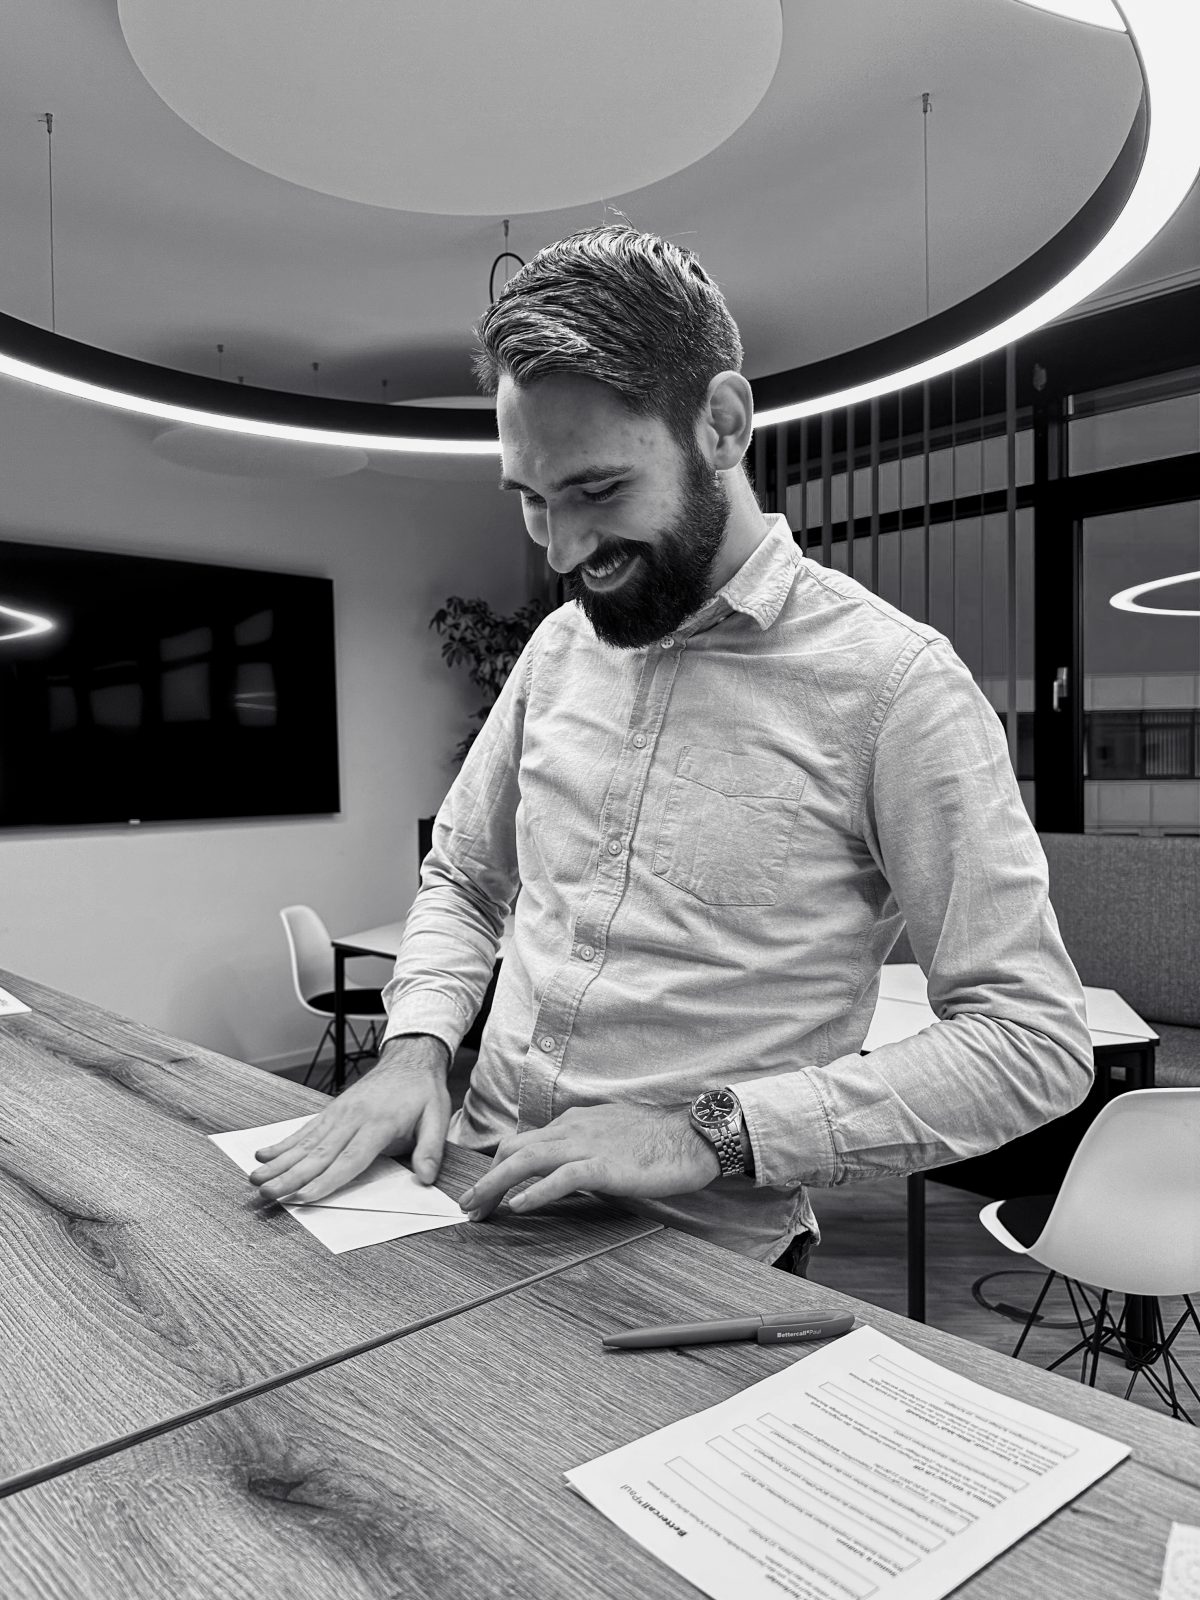 Ein Schwarz-Weiß-Foto eines lächelnden Mannes, der an einem Tisch steht und Papiere faltet.